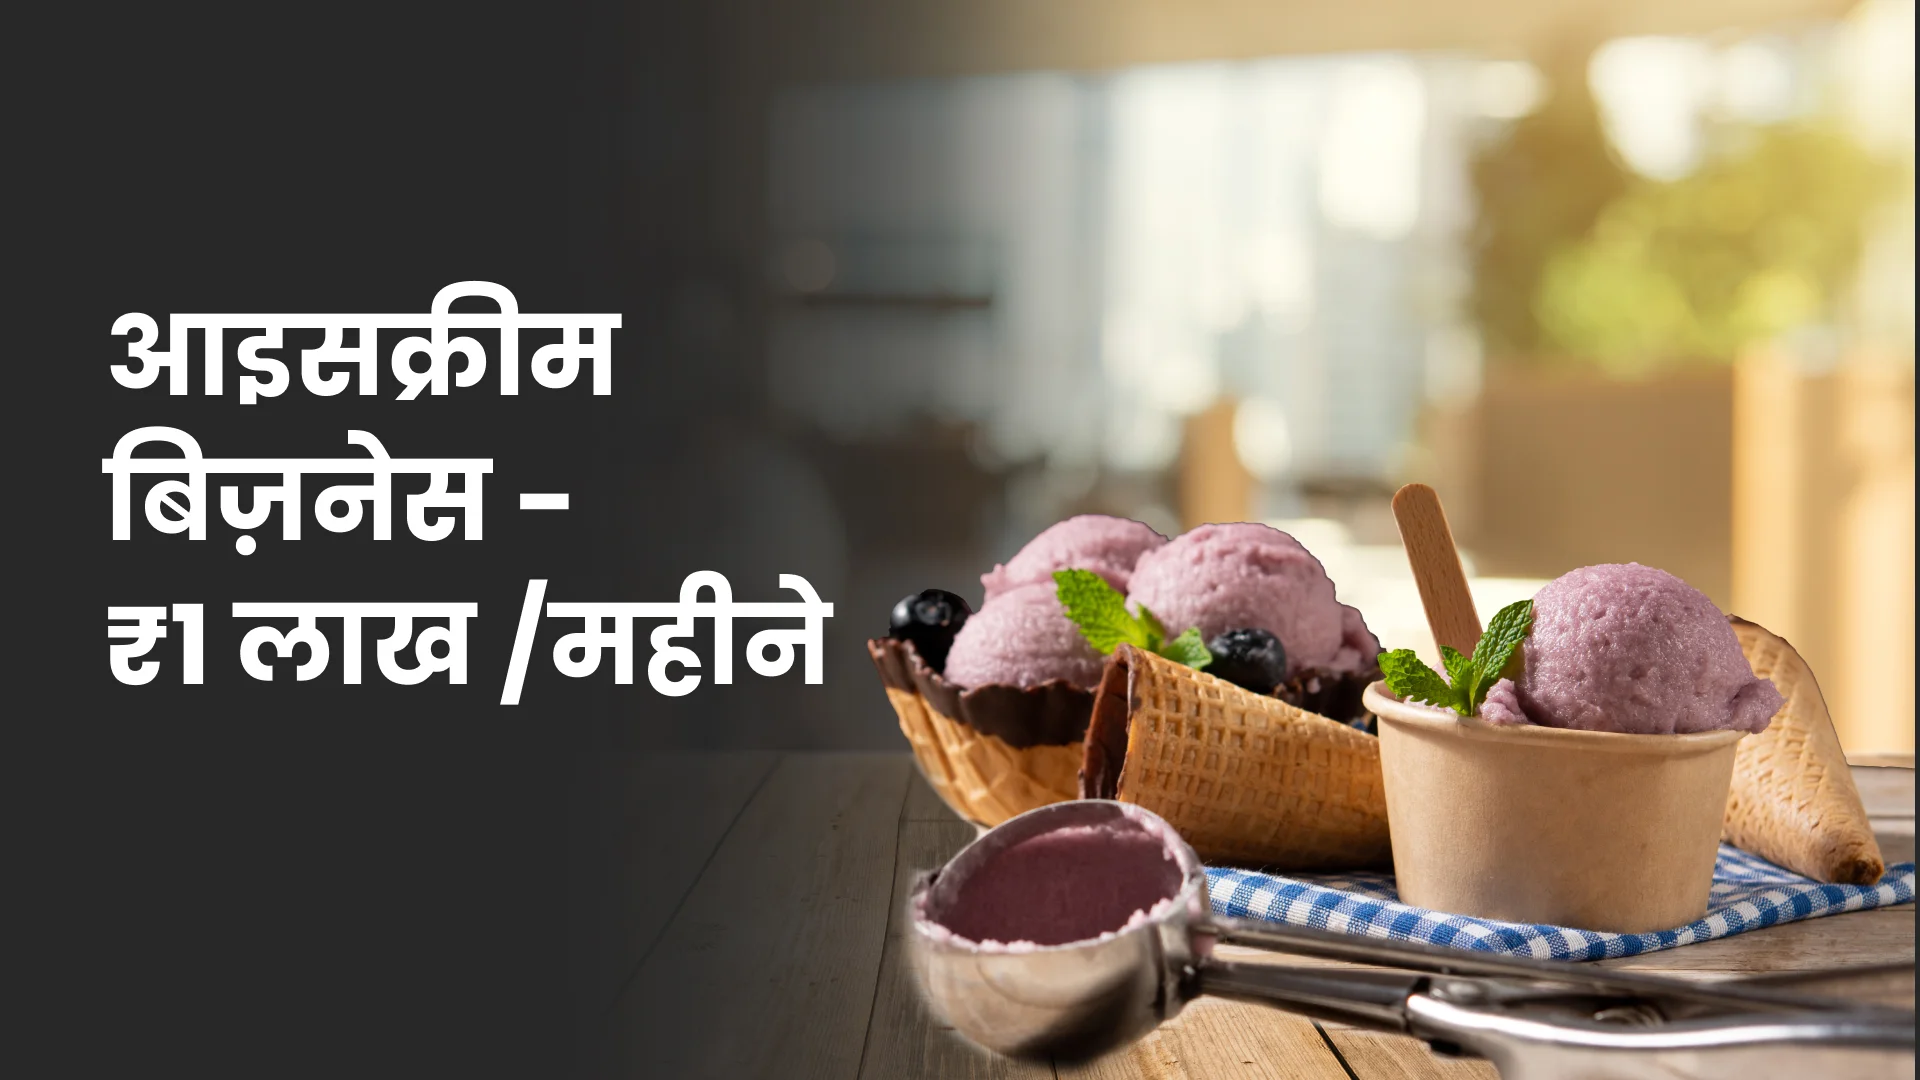 कोर्स ट्रेलर: आइसक्रीम बिज़नेस कोर्स - हर महीने ₹1 लाख से ज्यादा कमाय। अधिक जानने के लिए देखें।